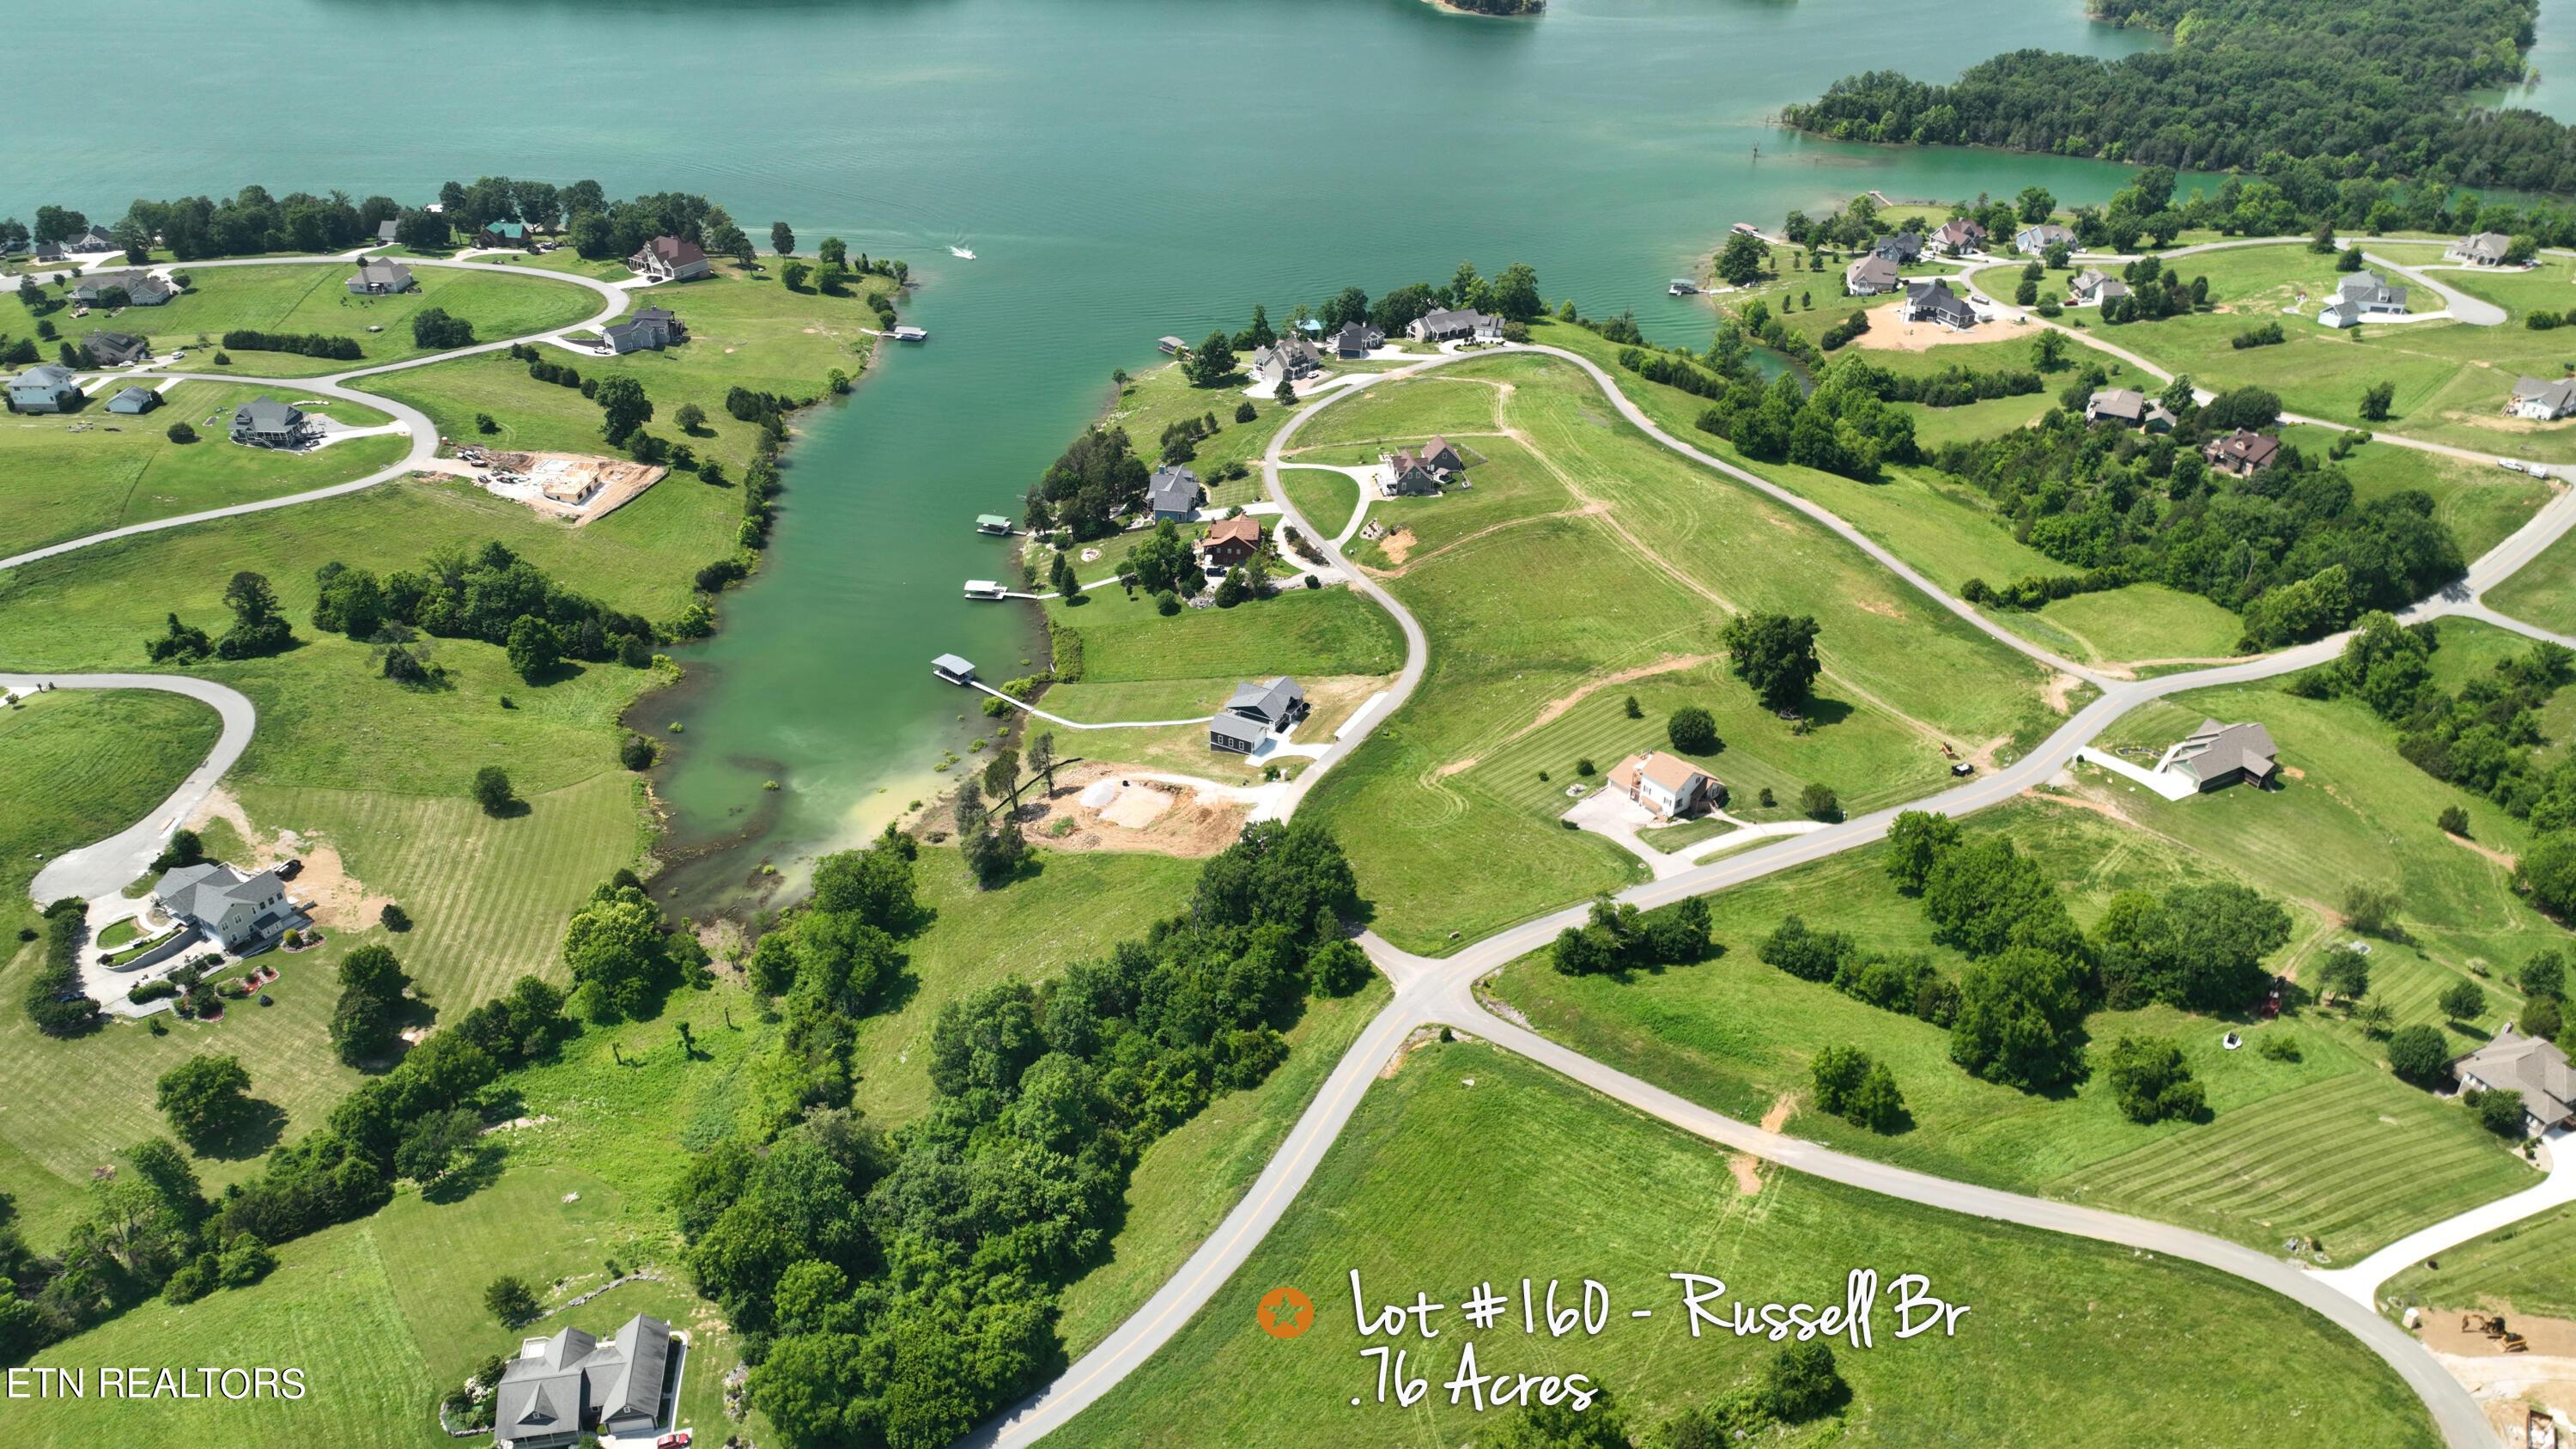 Norris Lake Real Estate - Image# 1